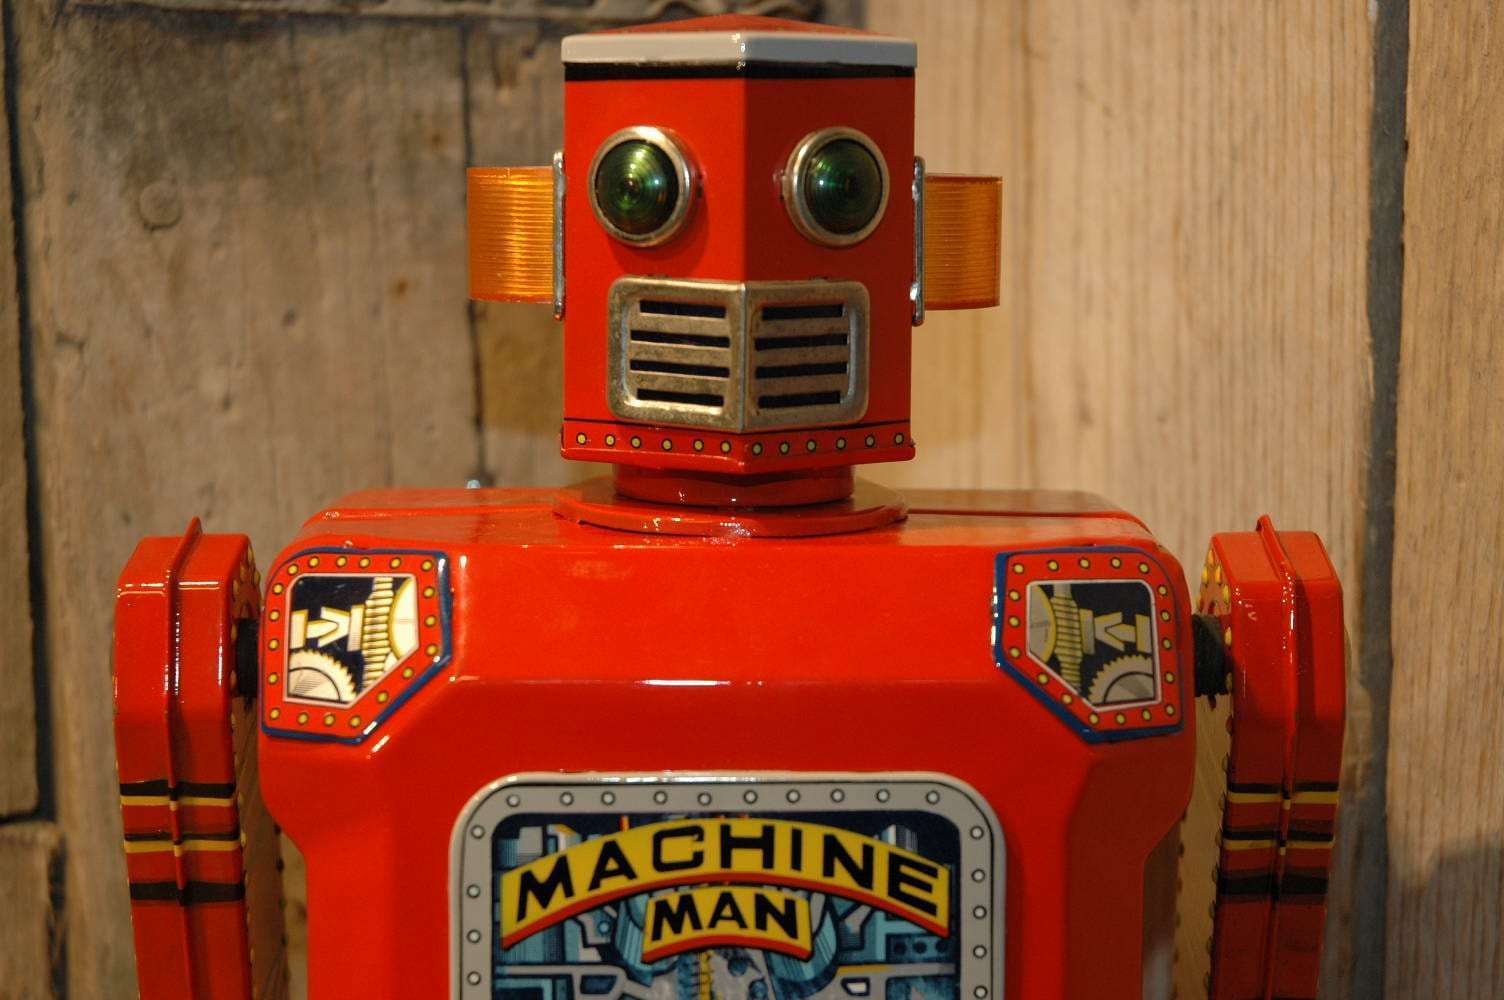 Modern Toys - Giant Machine Man